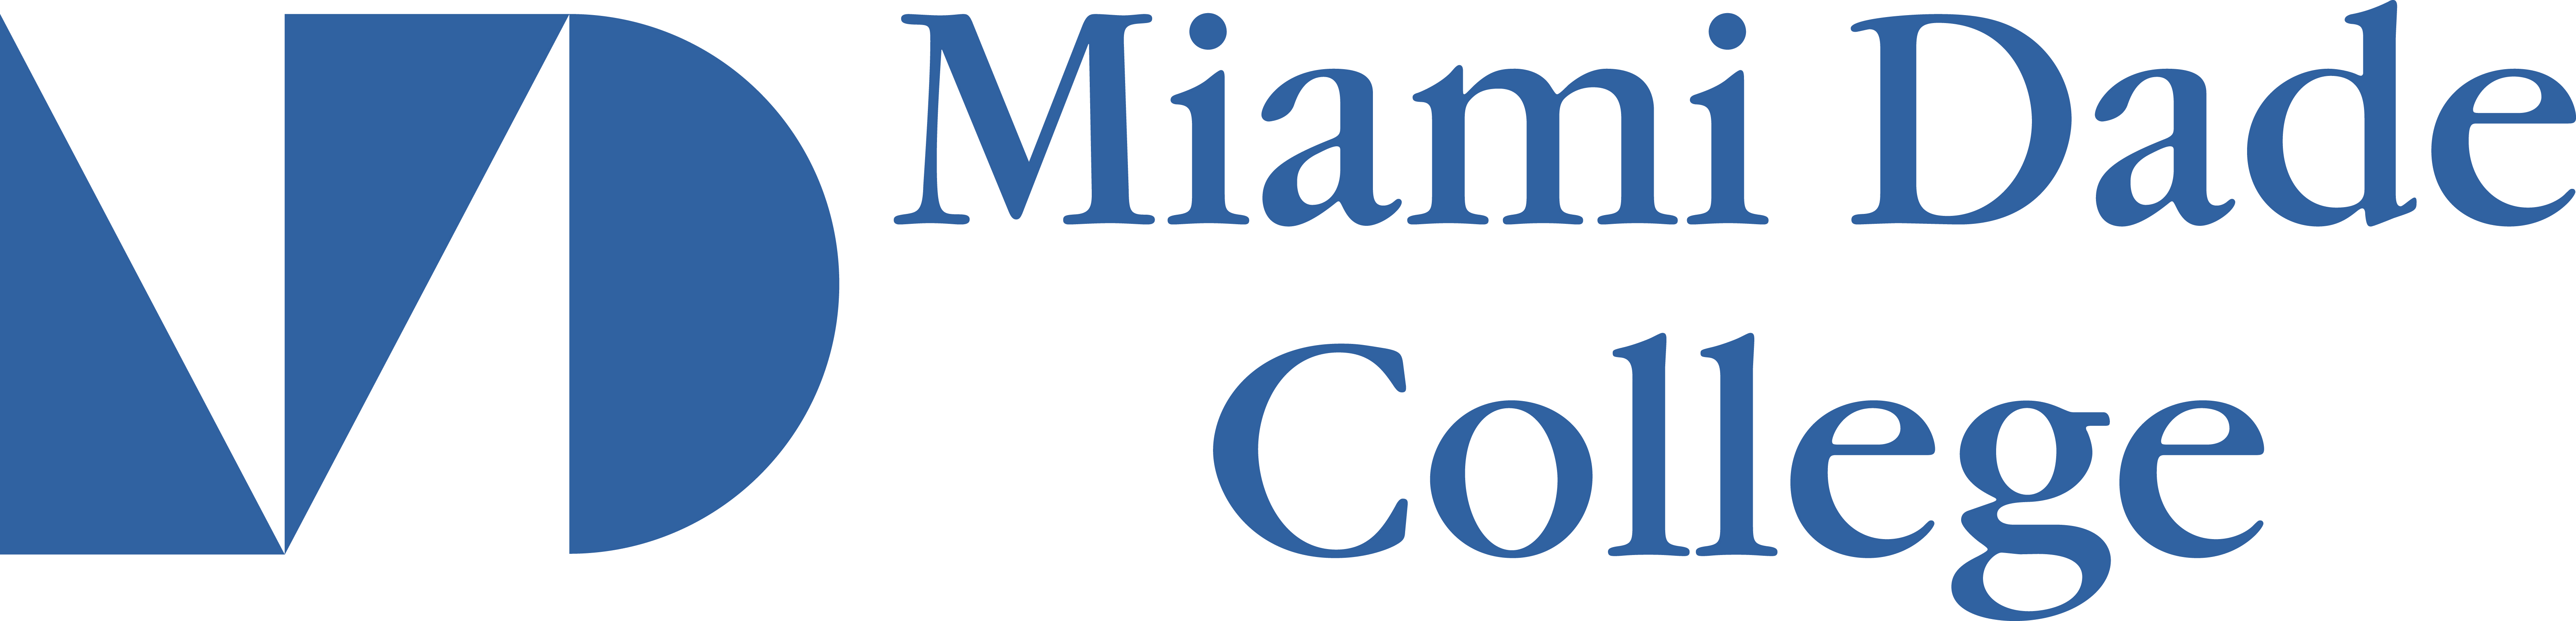 Miami Dage College